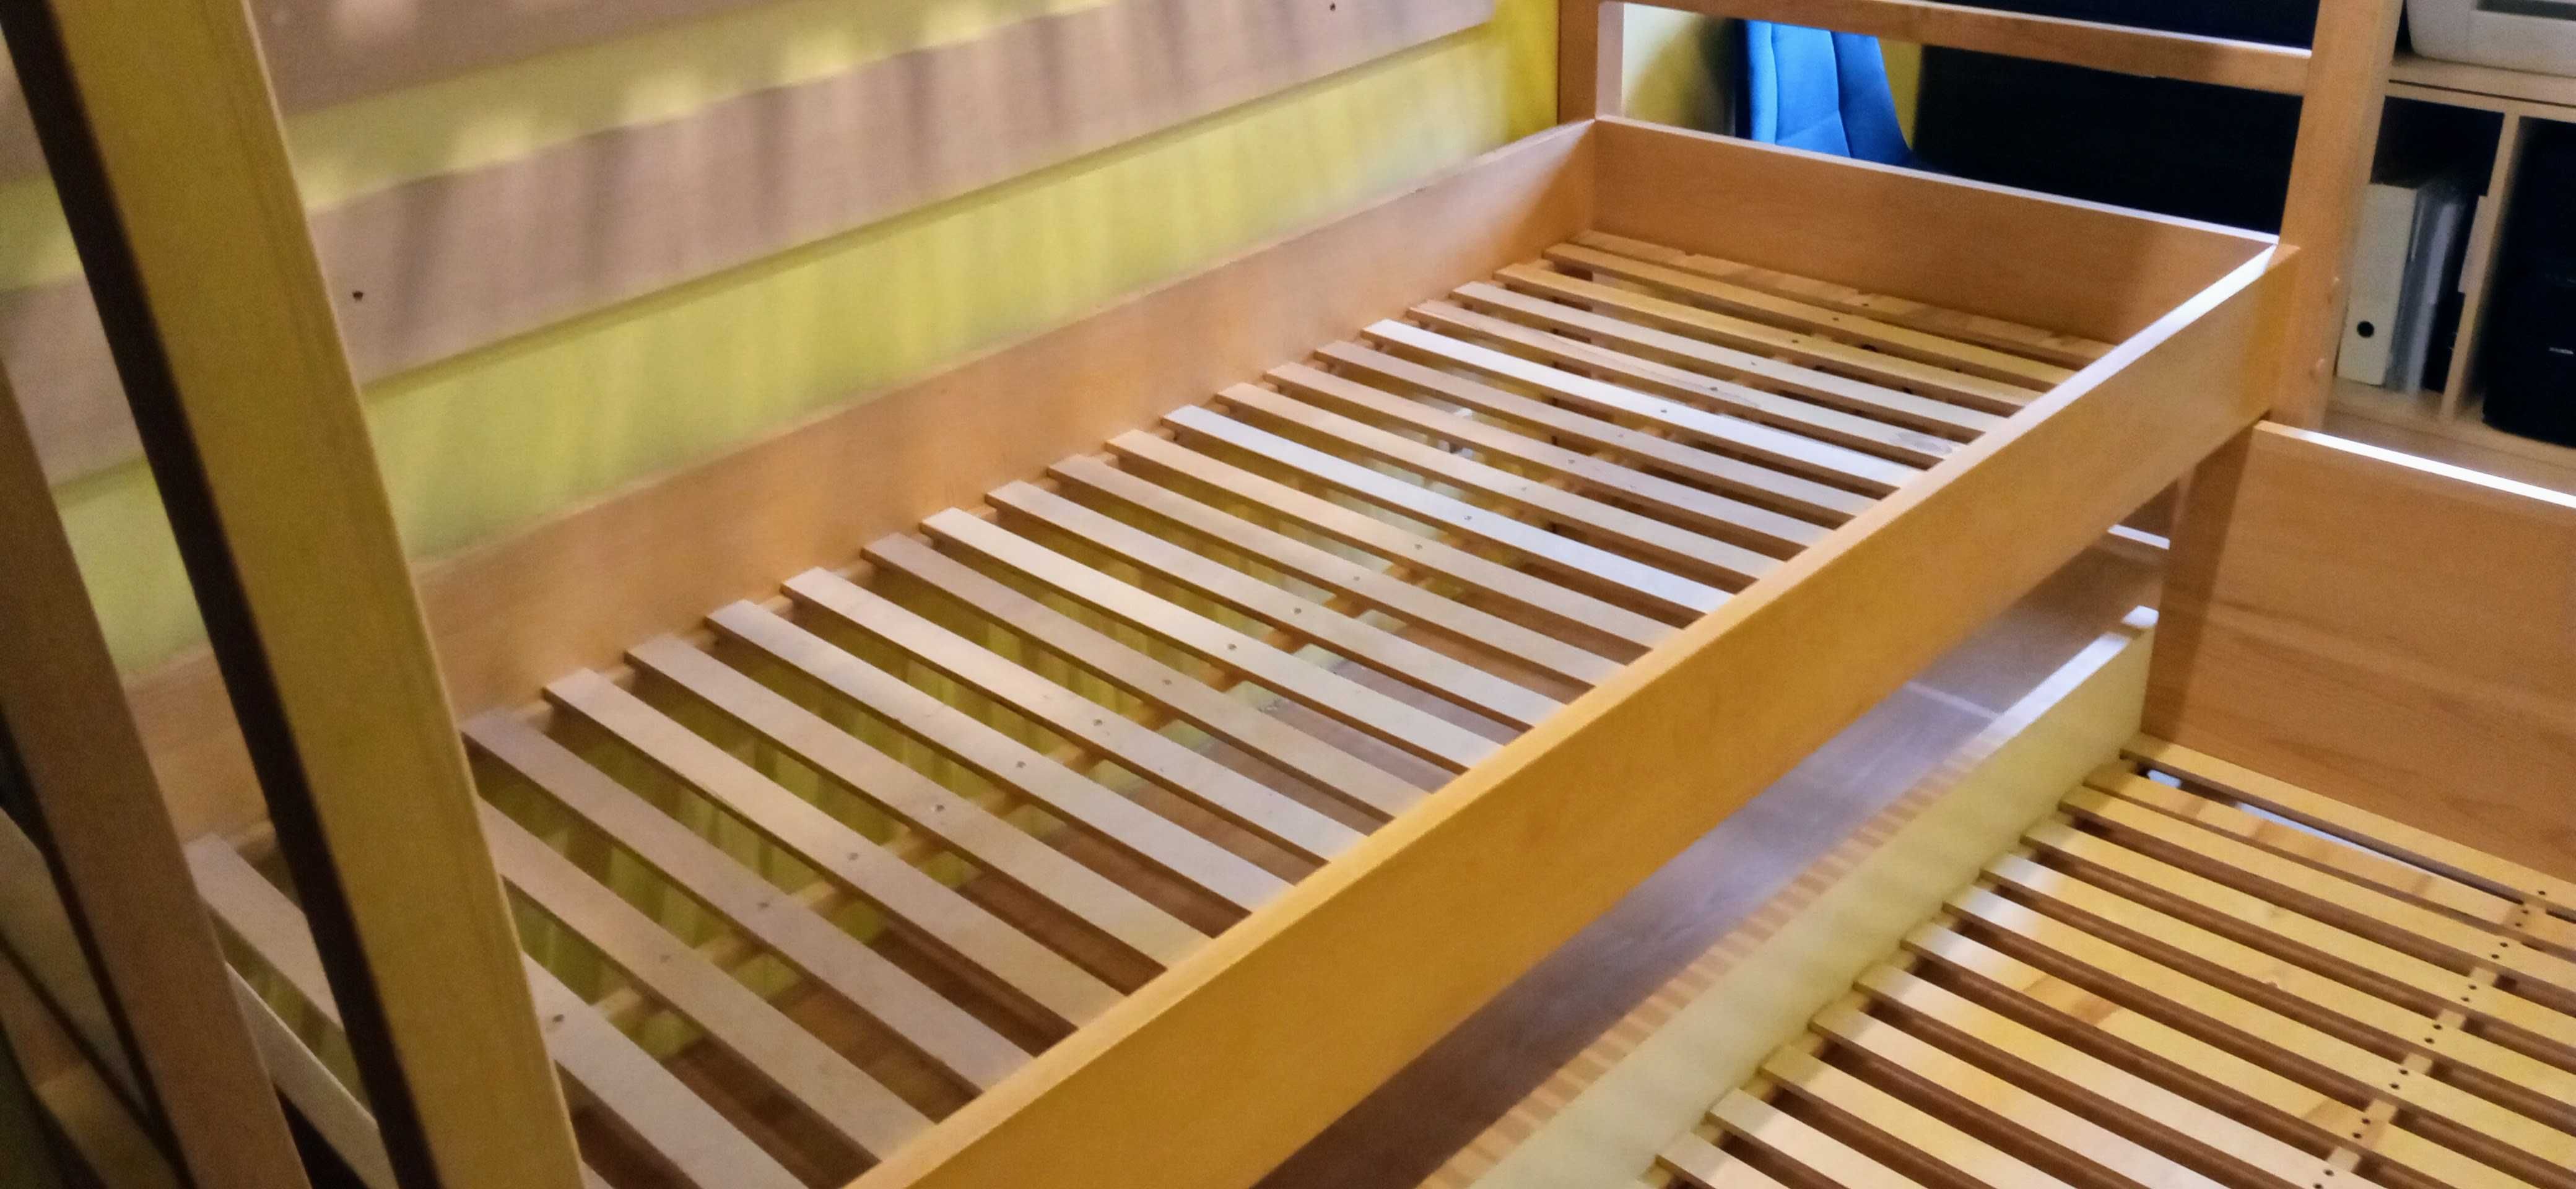 Łóżko Piętrowe - Jakość Drewno Lite Buk +3 x Materac + Wieszak + Dowóz